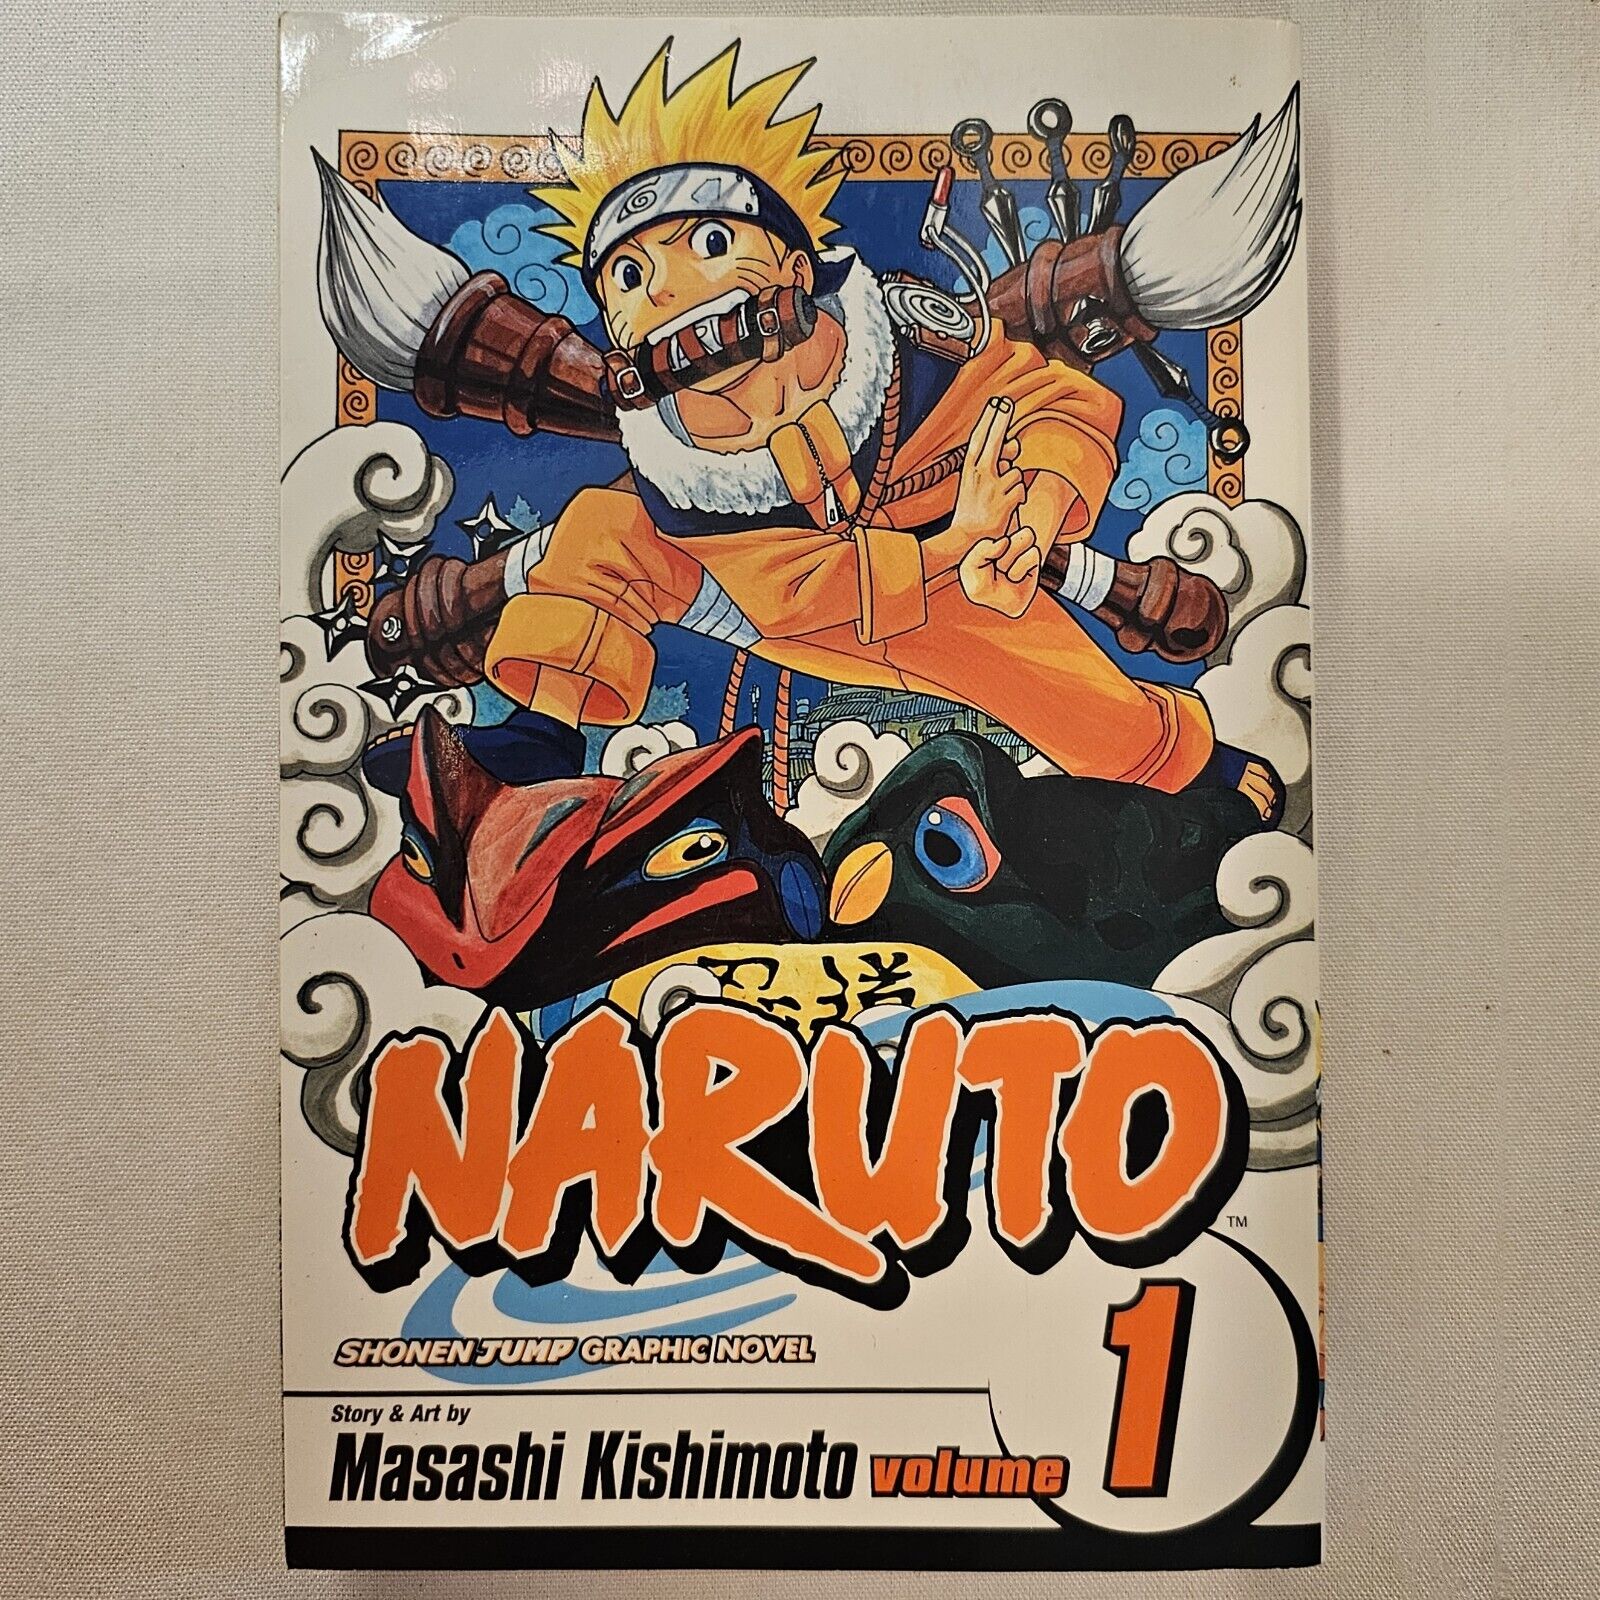 Naruto, Vol. 1: Uzumaki Naruto paperback by kishimoto masashi brand new US PRINT